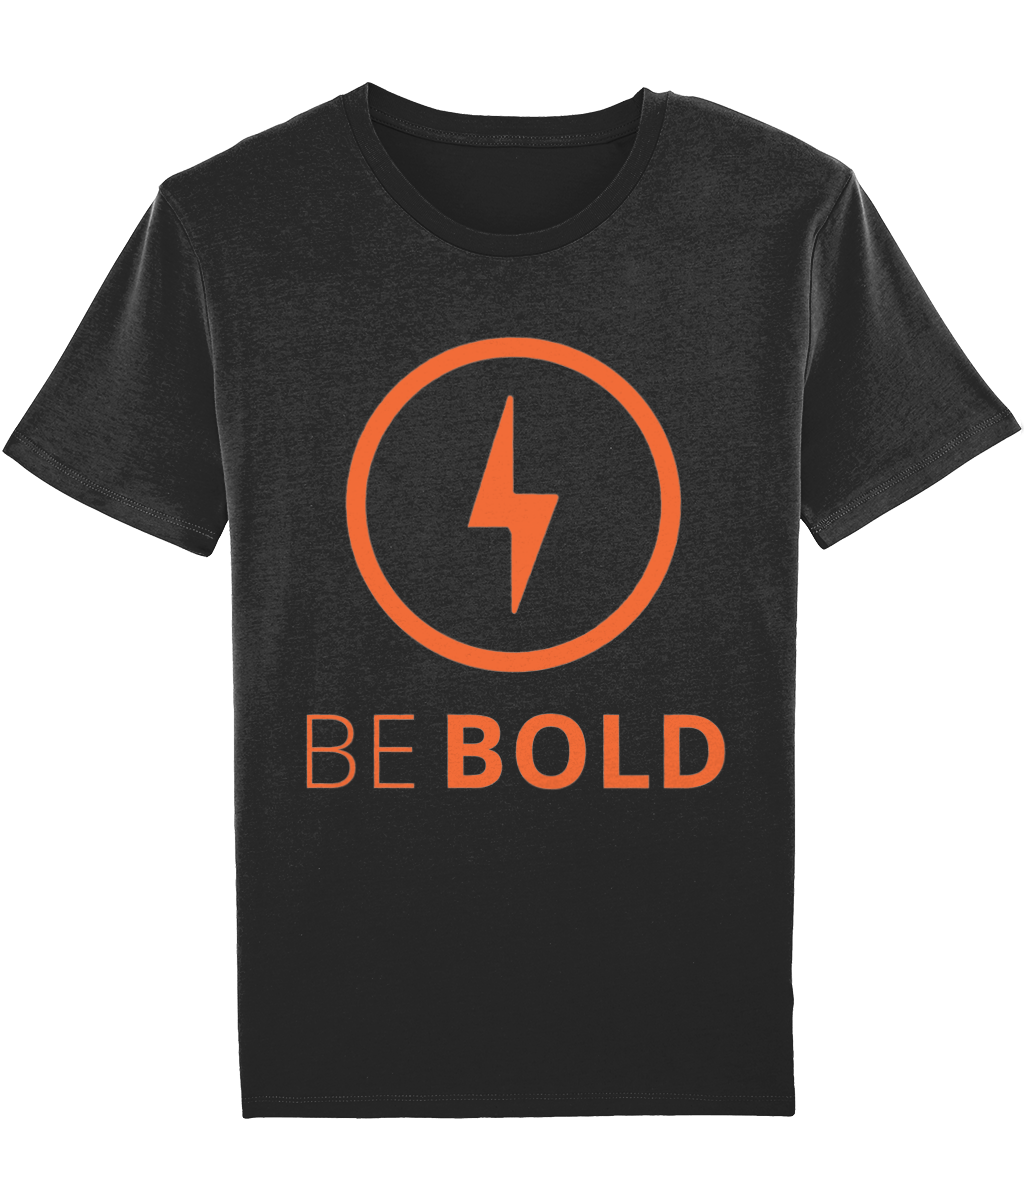 Men's Motivational t-shirt Be Bold